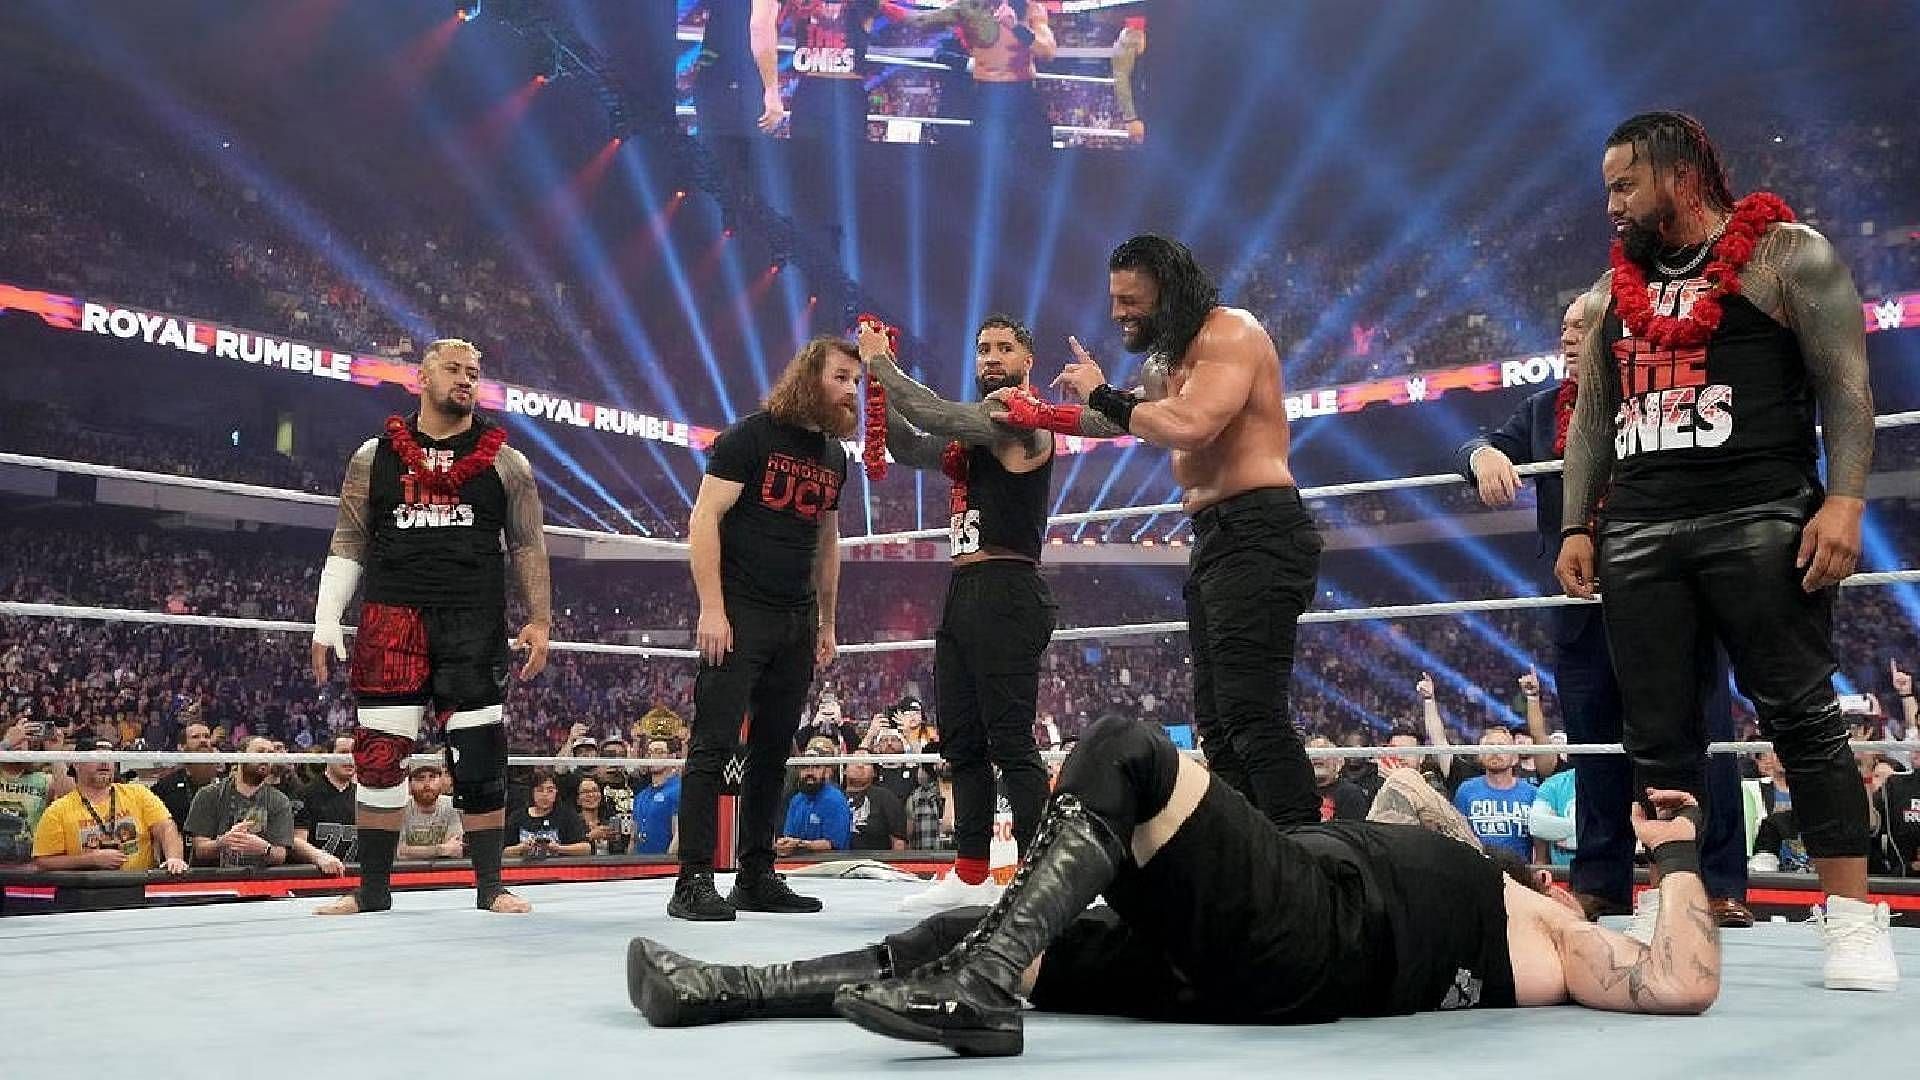  WWE Royal Rumble के मेन इवेंट में मचा था बवाल